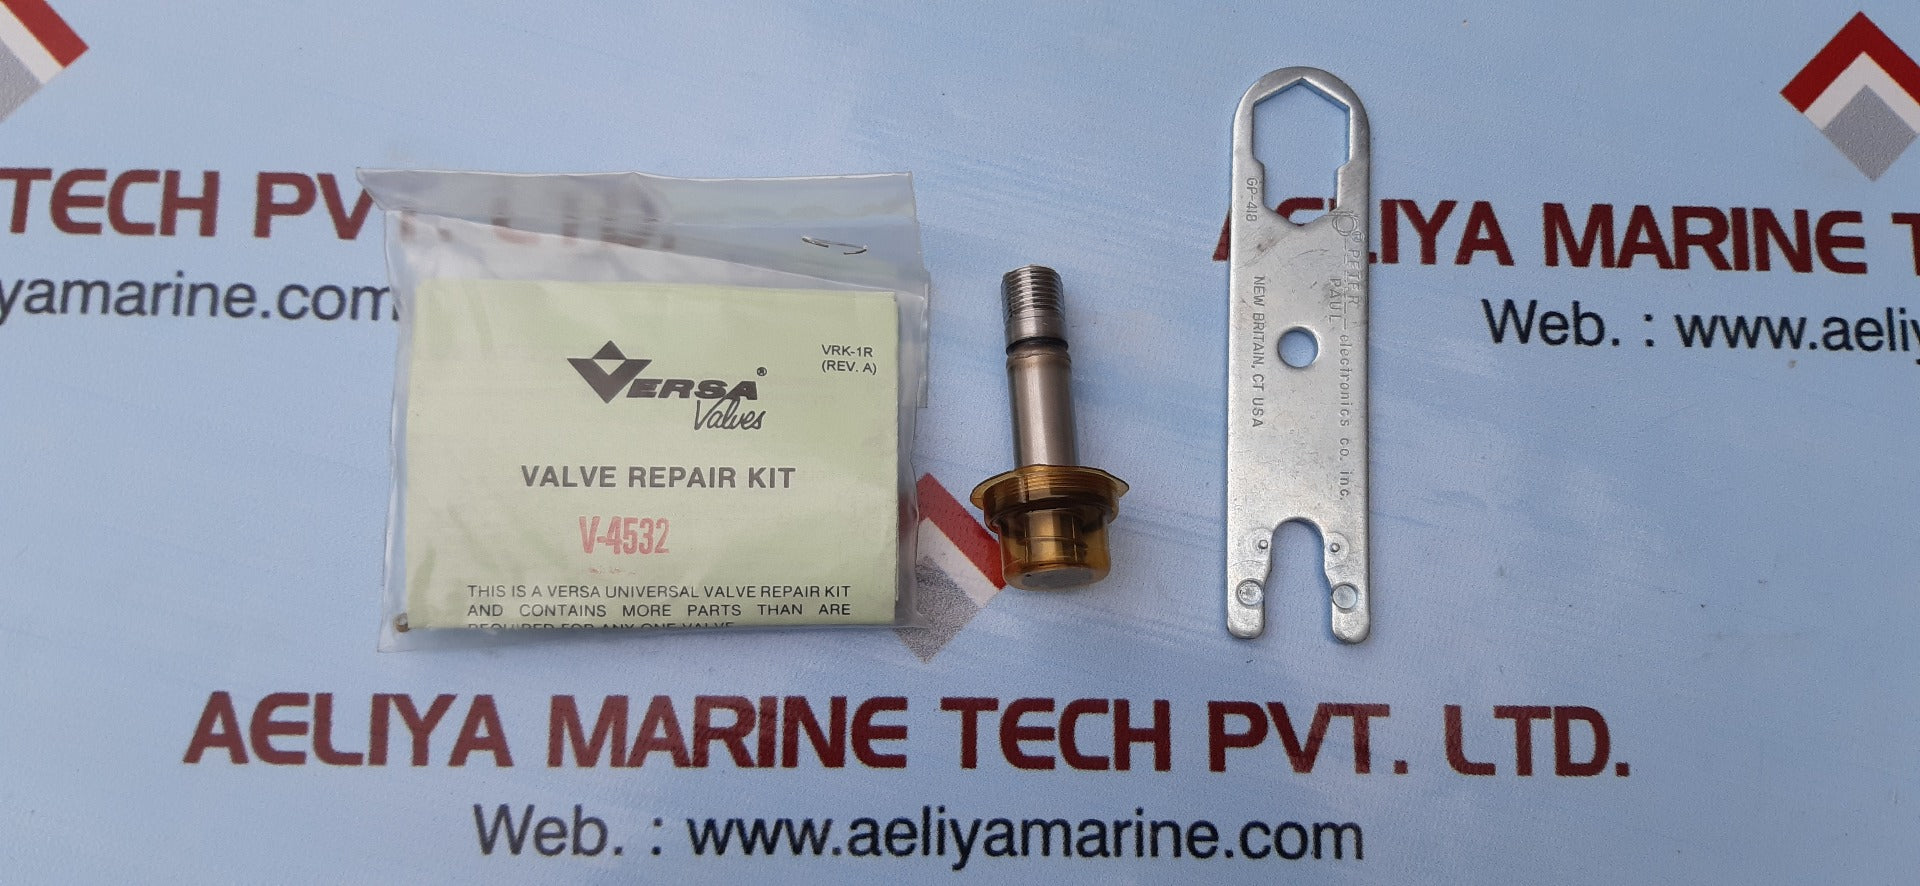 Versa v-4532 valve repair kit